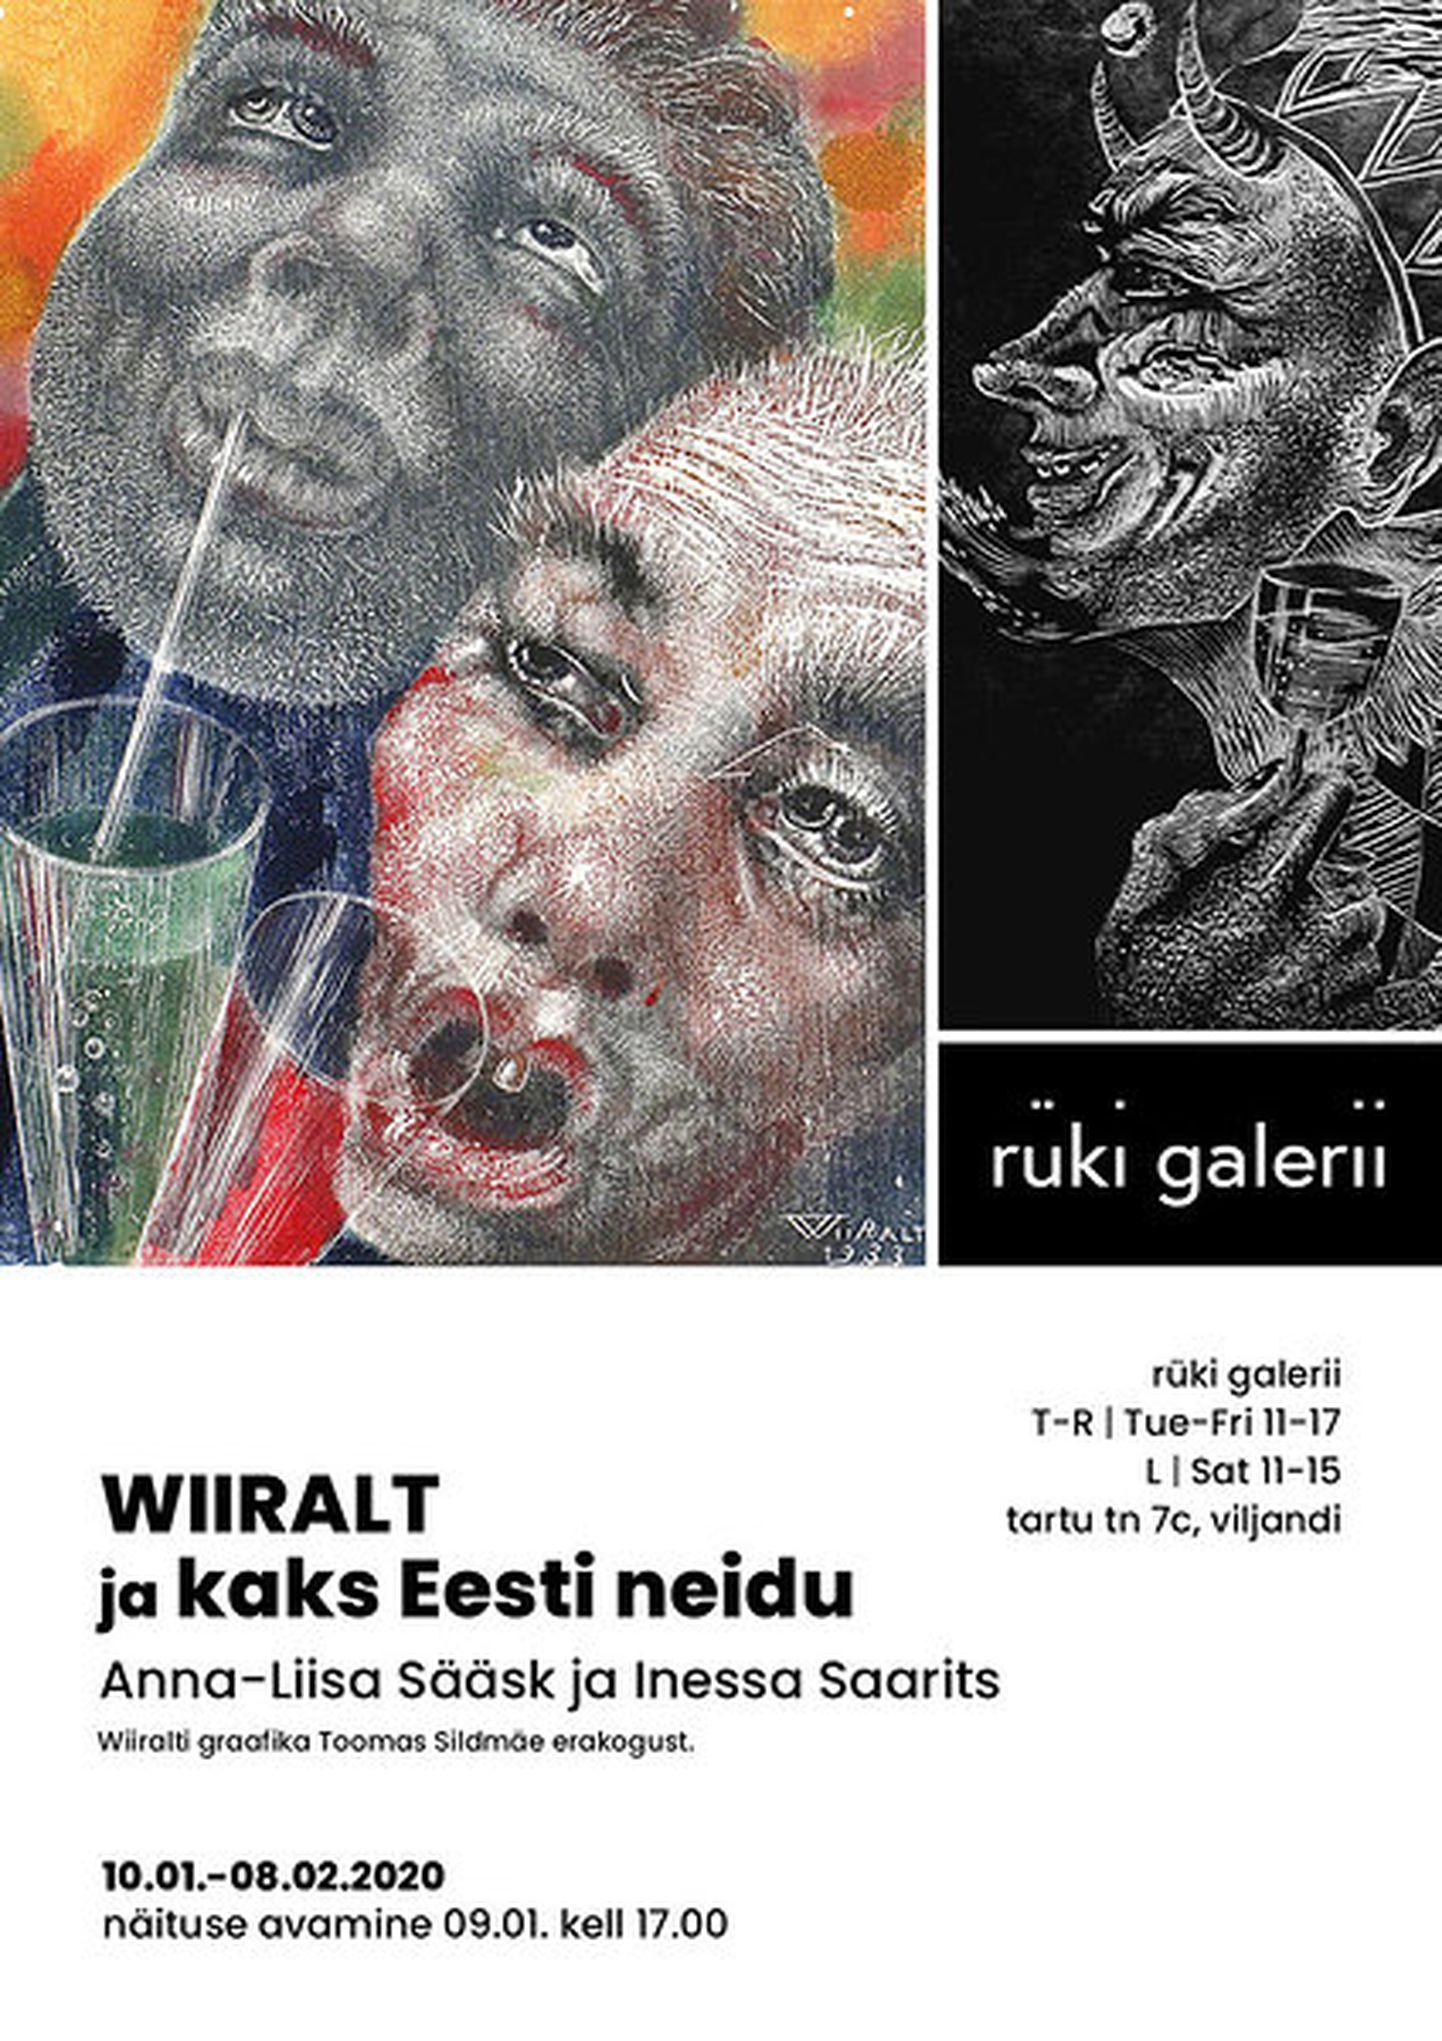 Viljandis Rüki galeriis avatakse täna kell 17 näitus «WIIRALT ja kaks Eesti neidu. Anna-Liisa Sääsk ja Inessa Saarits».